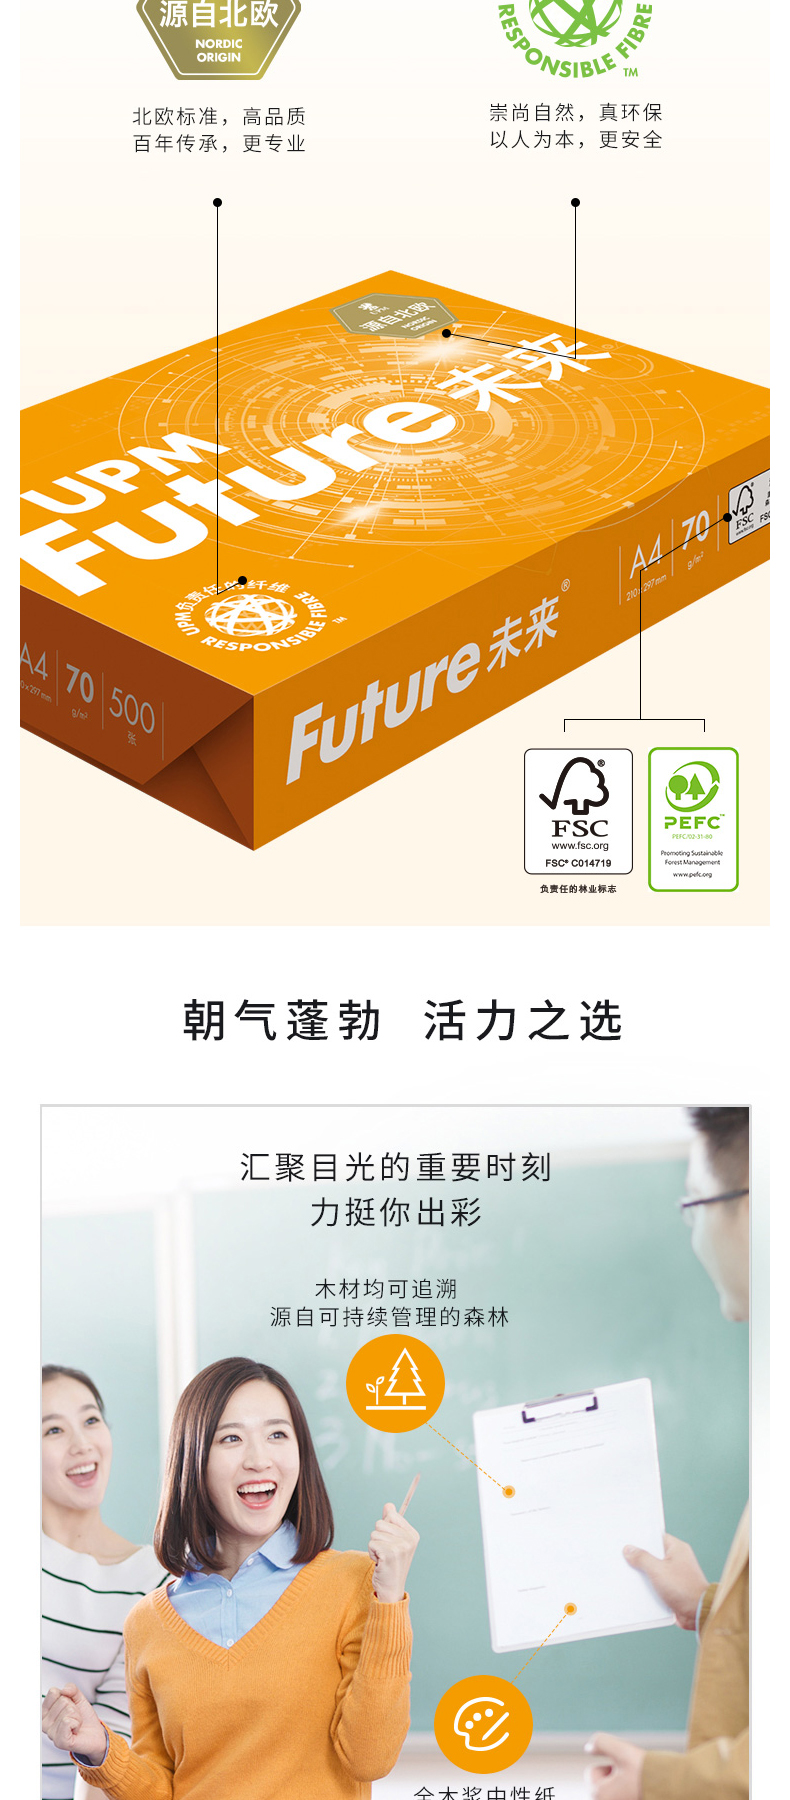 未来 UPM 复印纸普白 橙未来 A4 70g  500张/包 5包/箱